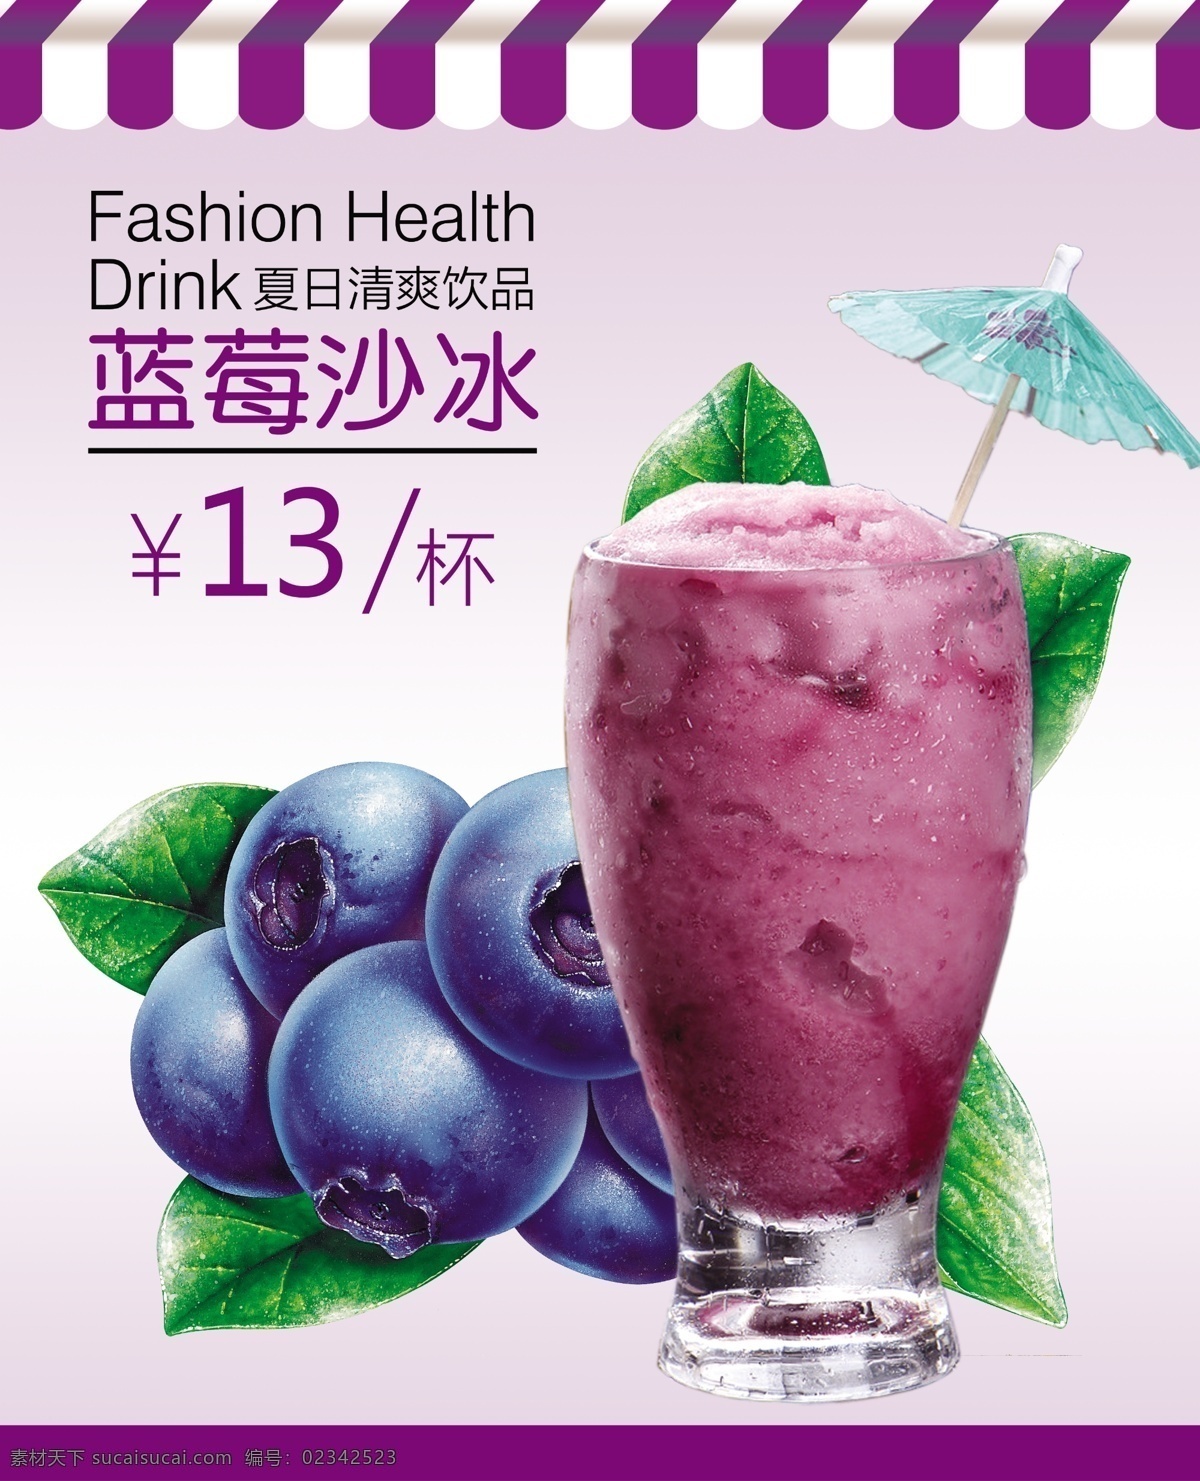 条纹 蓝莓 蓝莓沙冰 新鲜 美味 果汁 饮品 水果 紫色 夏日 清凉 冰爽 饮料 鲜榨 分层